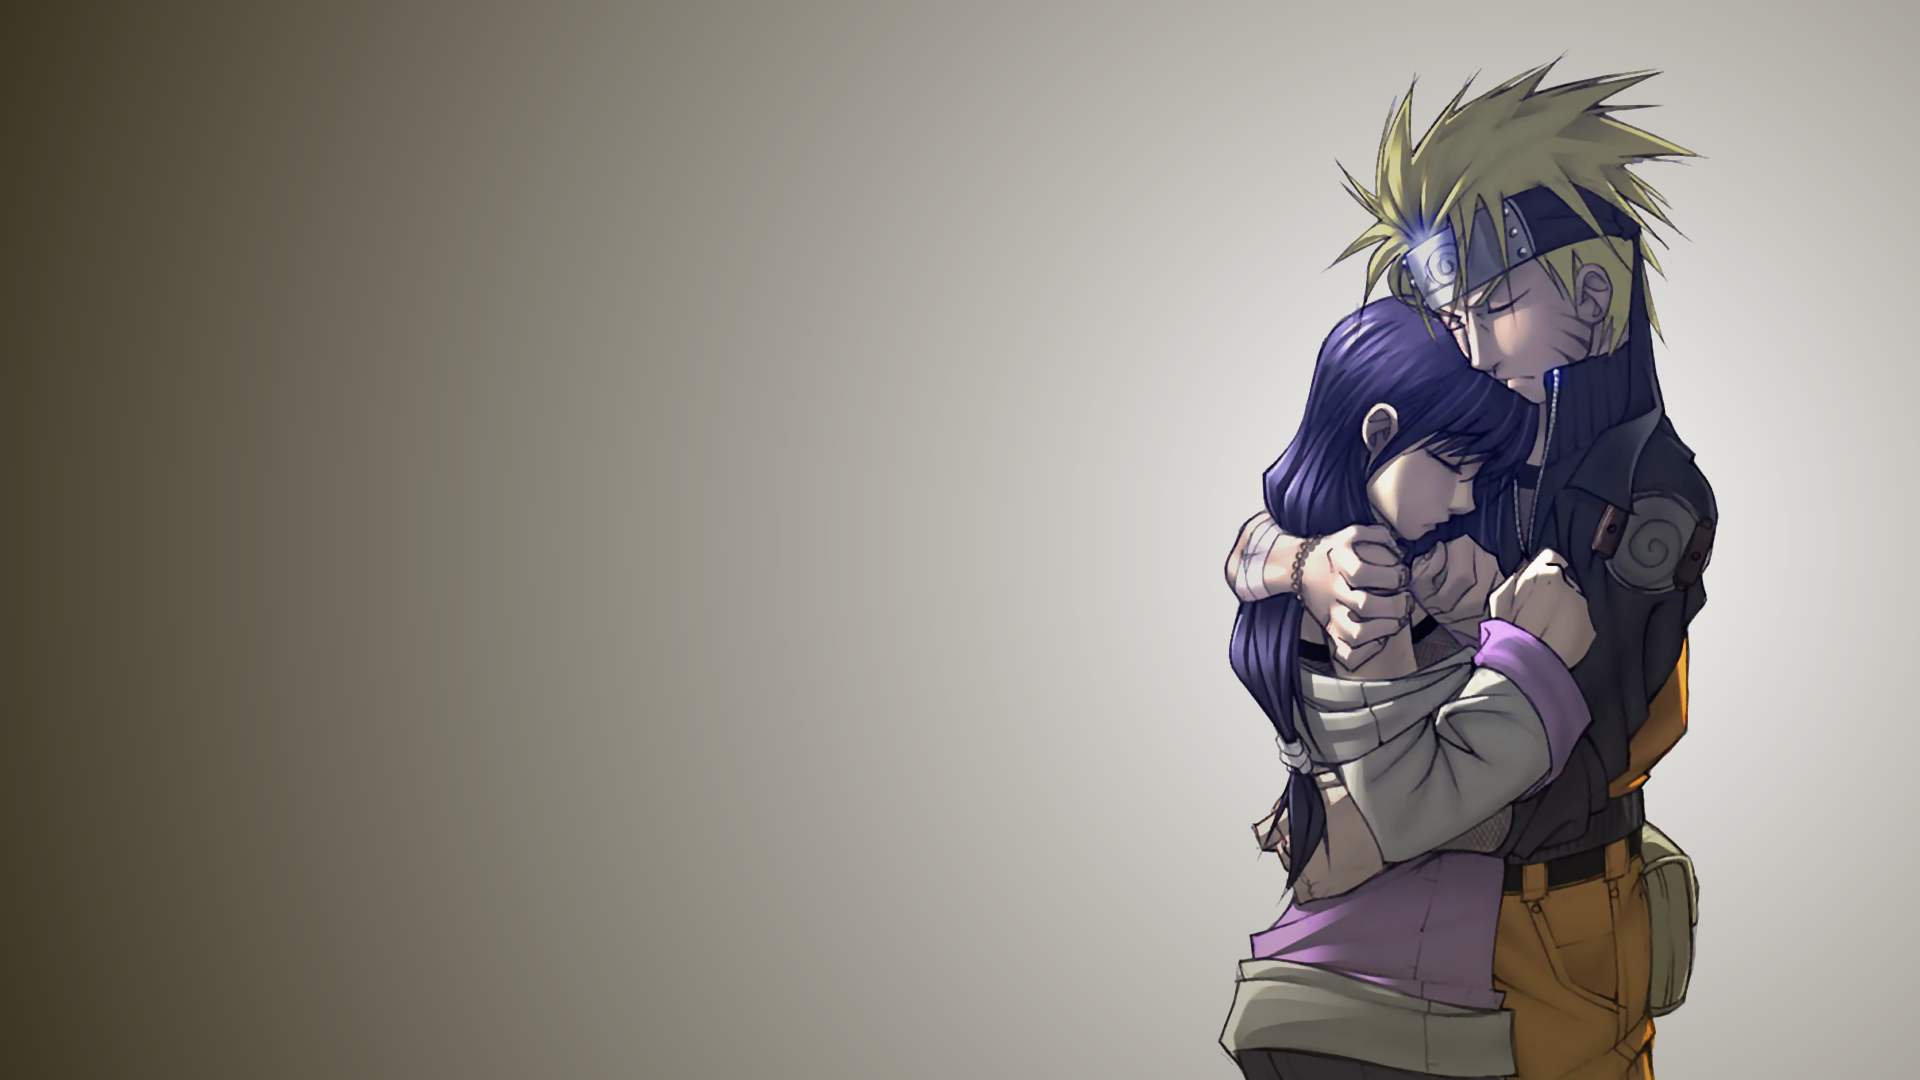 Hình nền Naruto và Hinata - Hình nền này sẽ đưa bạn đến với câu chuyện tình yêu đầy xúc động giữa Naruto và Hinata. Đây là một trong những cảnh tình cảm đẹp nhất của Naruto, chắc chắn sẽ khiến bạn cảm thấy vô cùng lãng mạn.